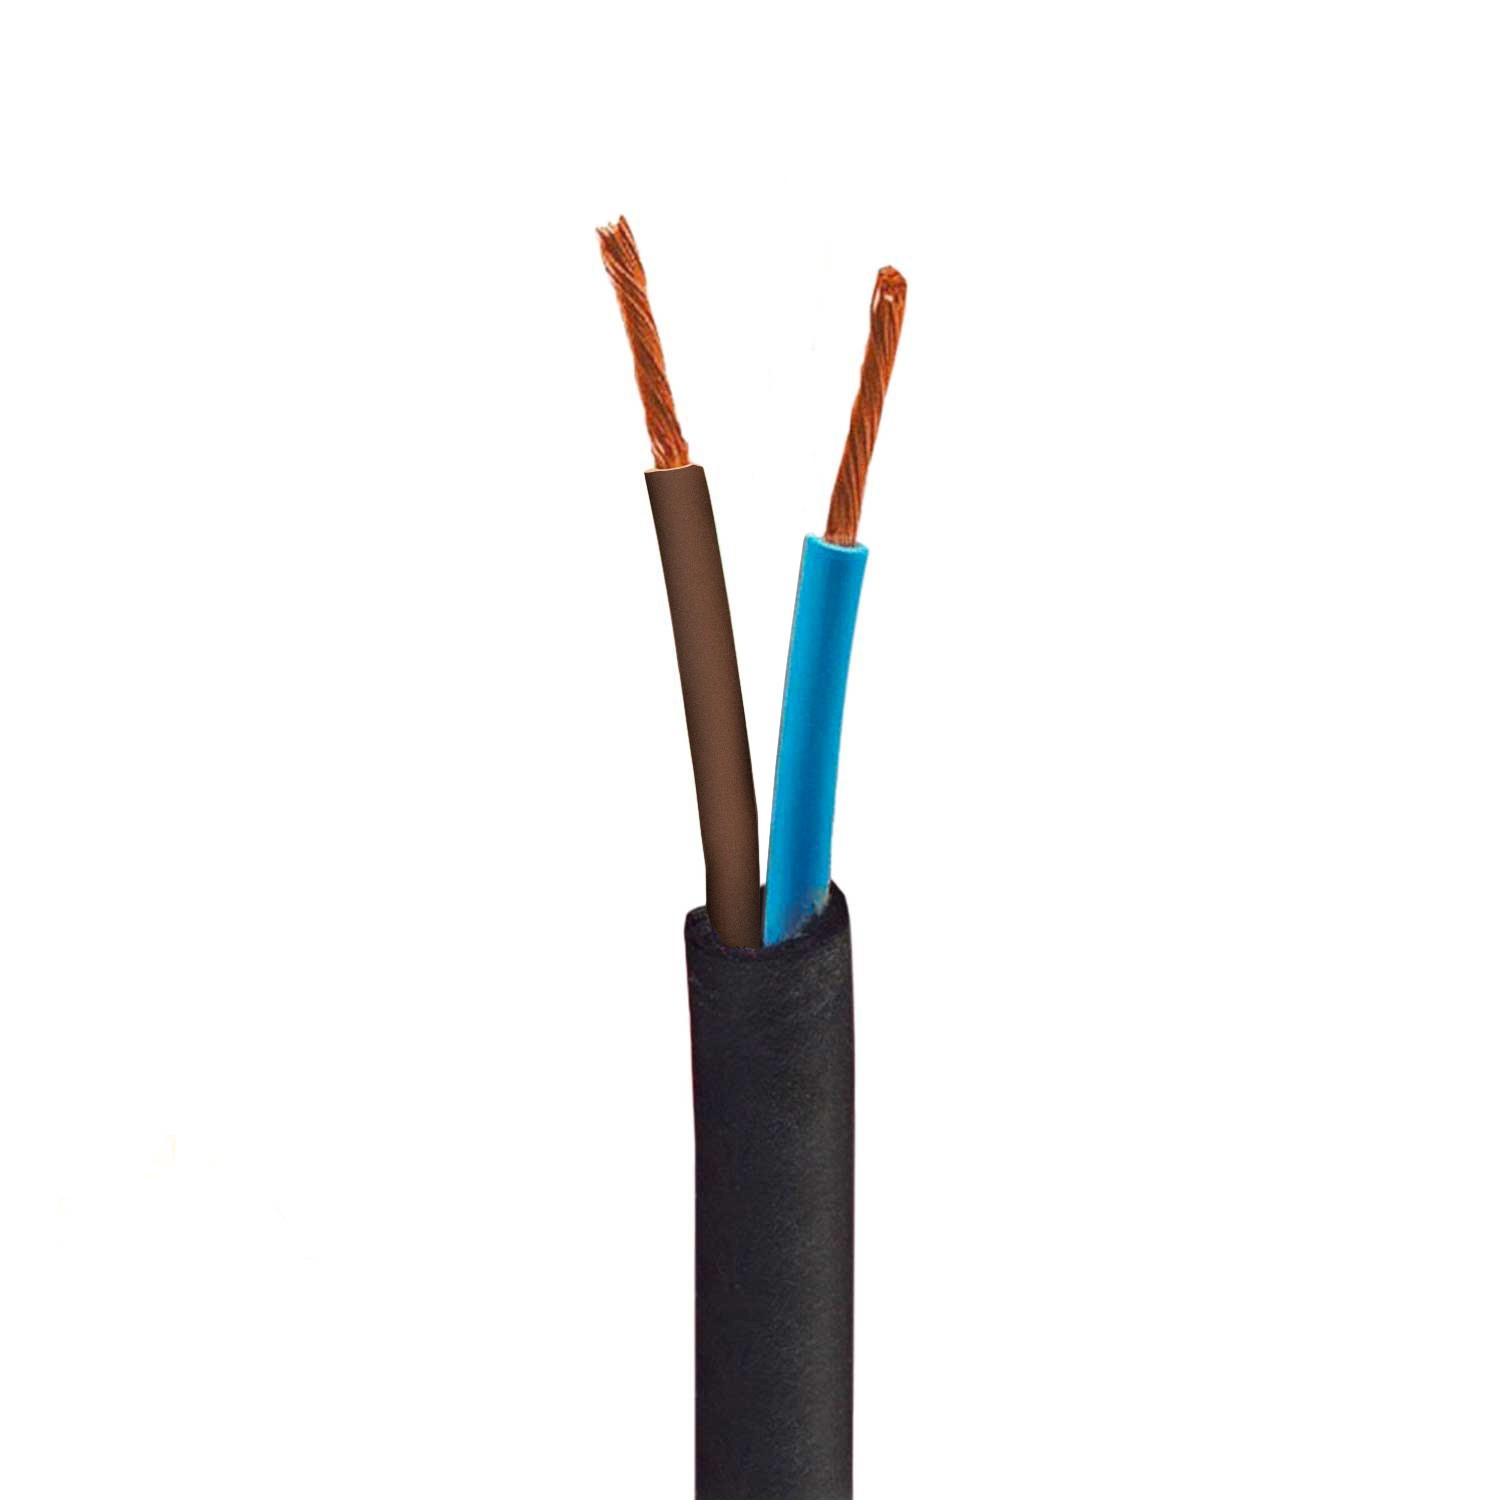 Okrúhly elektrický kábel odolný voči UV žiareniu, bavlnený, zelený SX08 na vonkajšie použitie - kompatibilný s Eiva Outdoor IP65